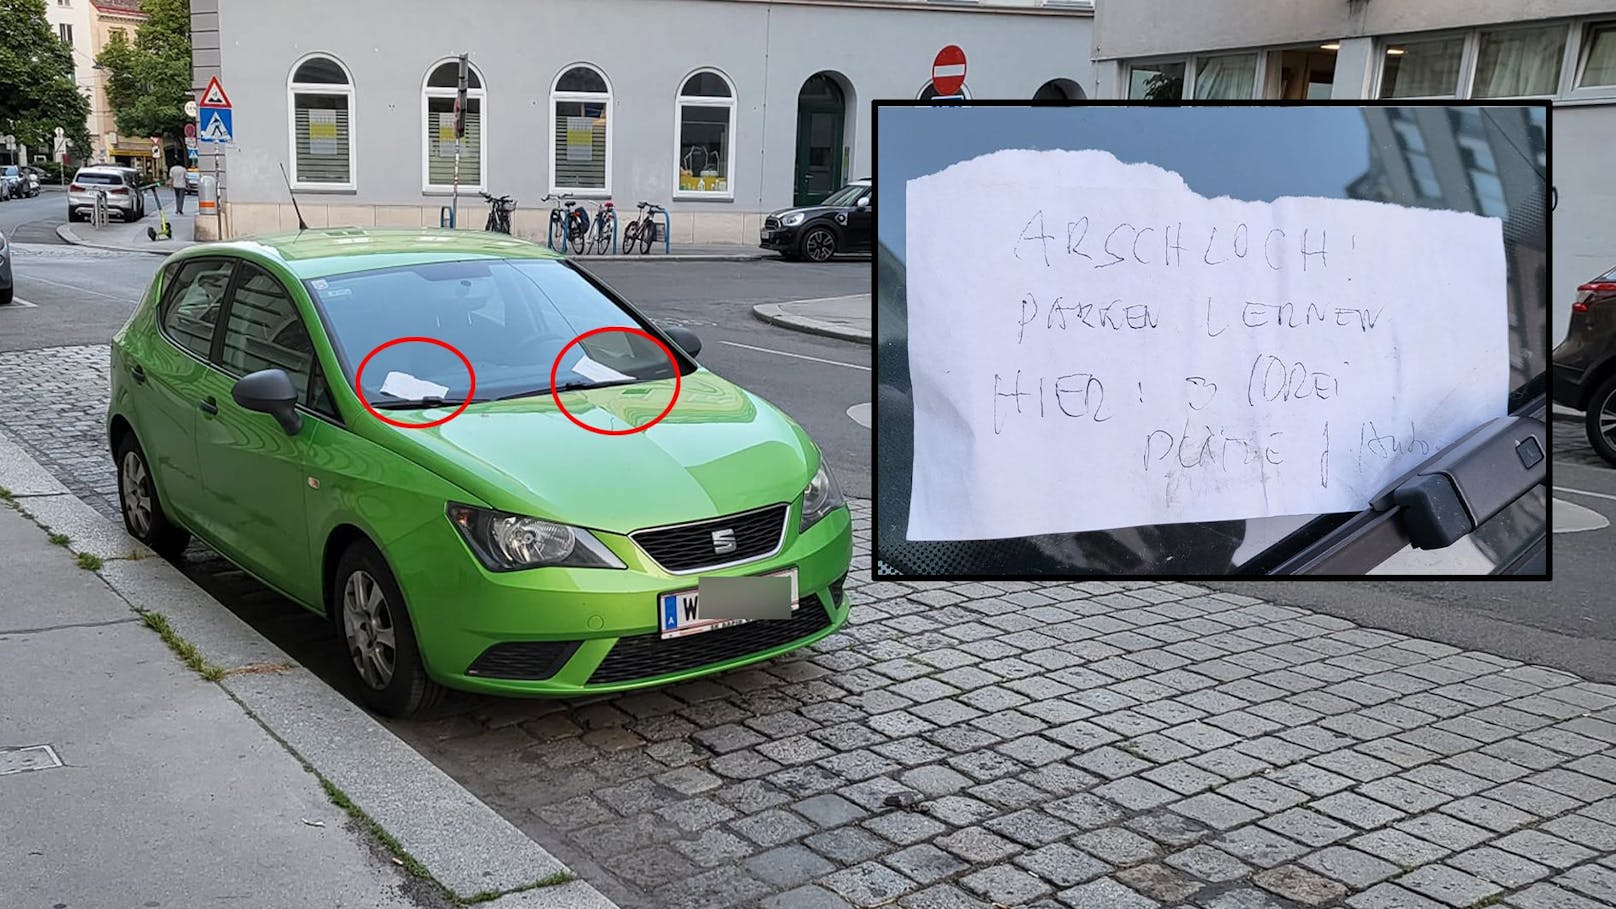 "Arschloch! Parken lernen, hier drei Plätze" - stand auf der wütenden Nachricht